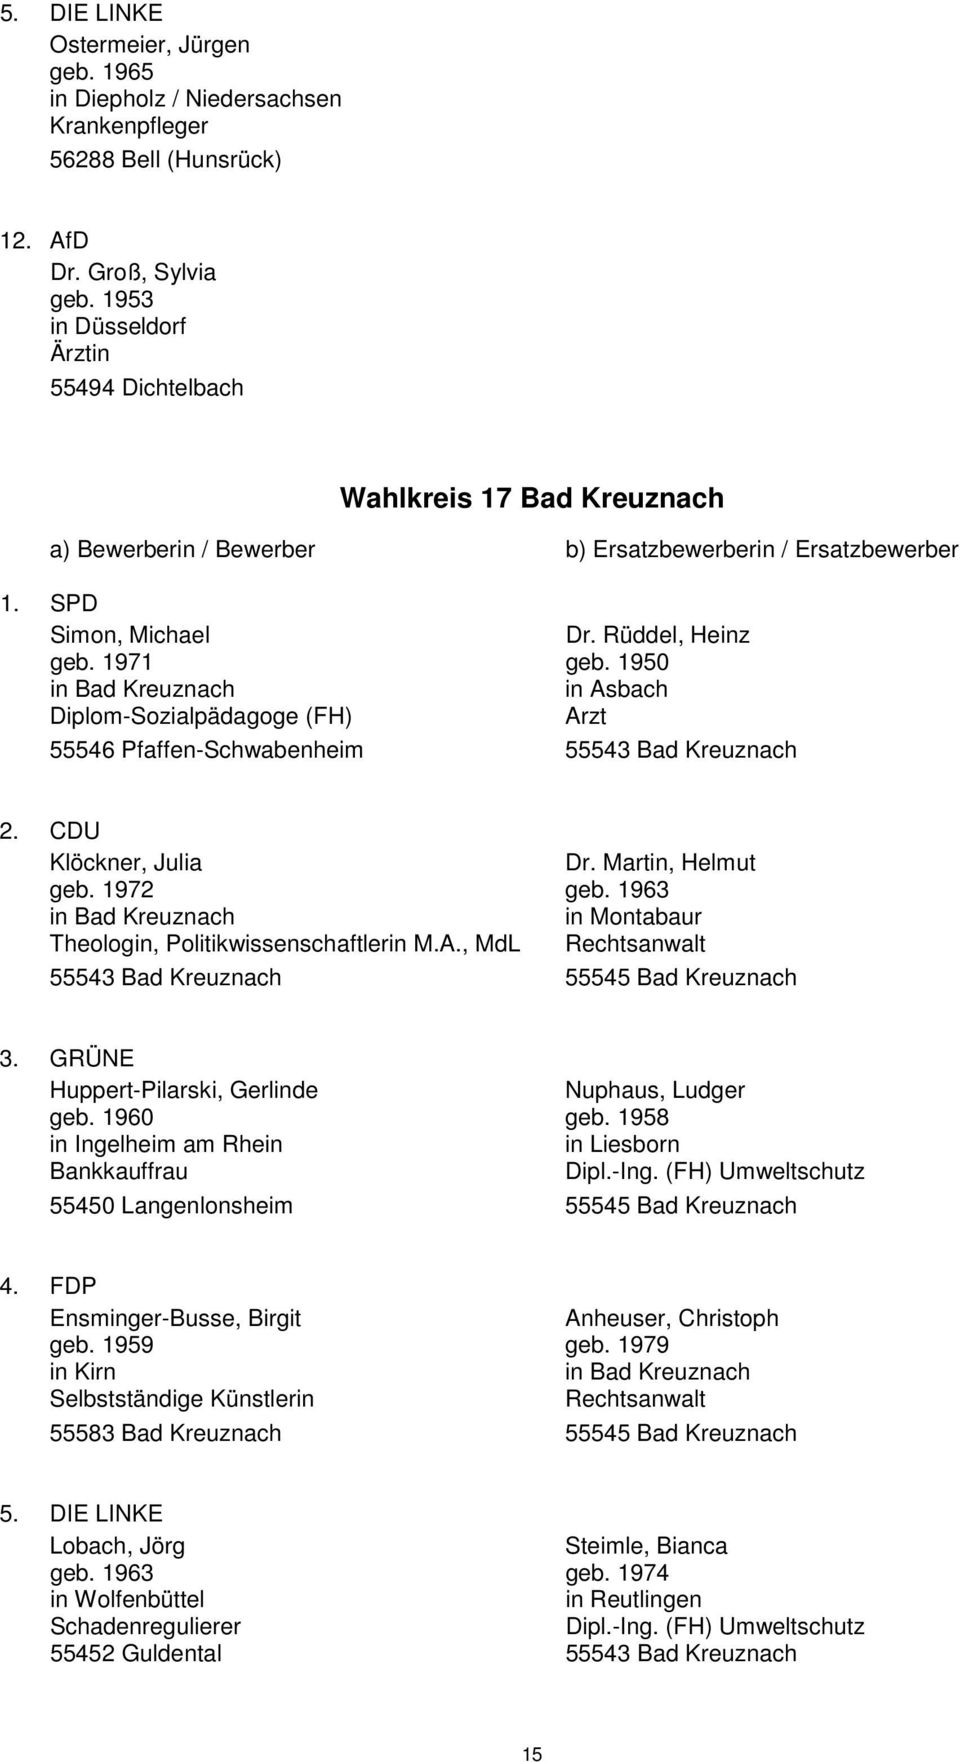 1950 in Bad Kreuznach in Asbach Diplom-Sozialpädagoge (FH) Arzt 55546 Pfaffen-Schwabenheim 55543 Bad Kreuznach Klöckner, Julia Dr. Martin, Helmut geb. 1972 geb.